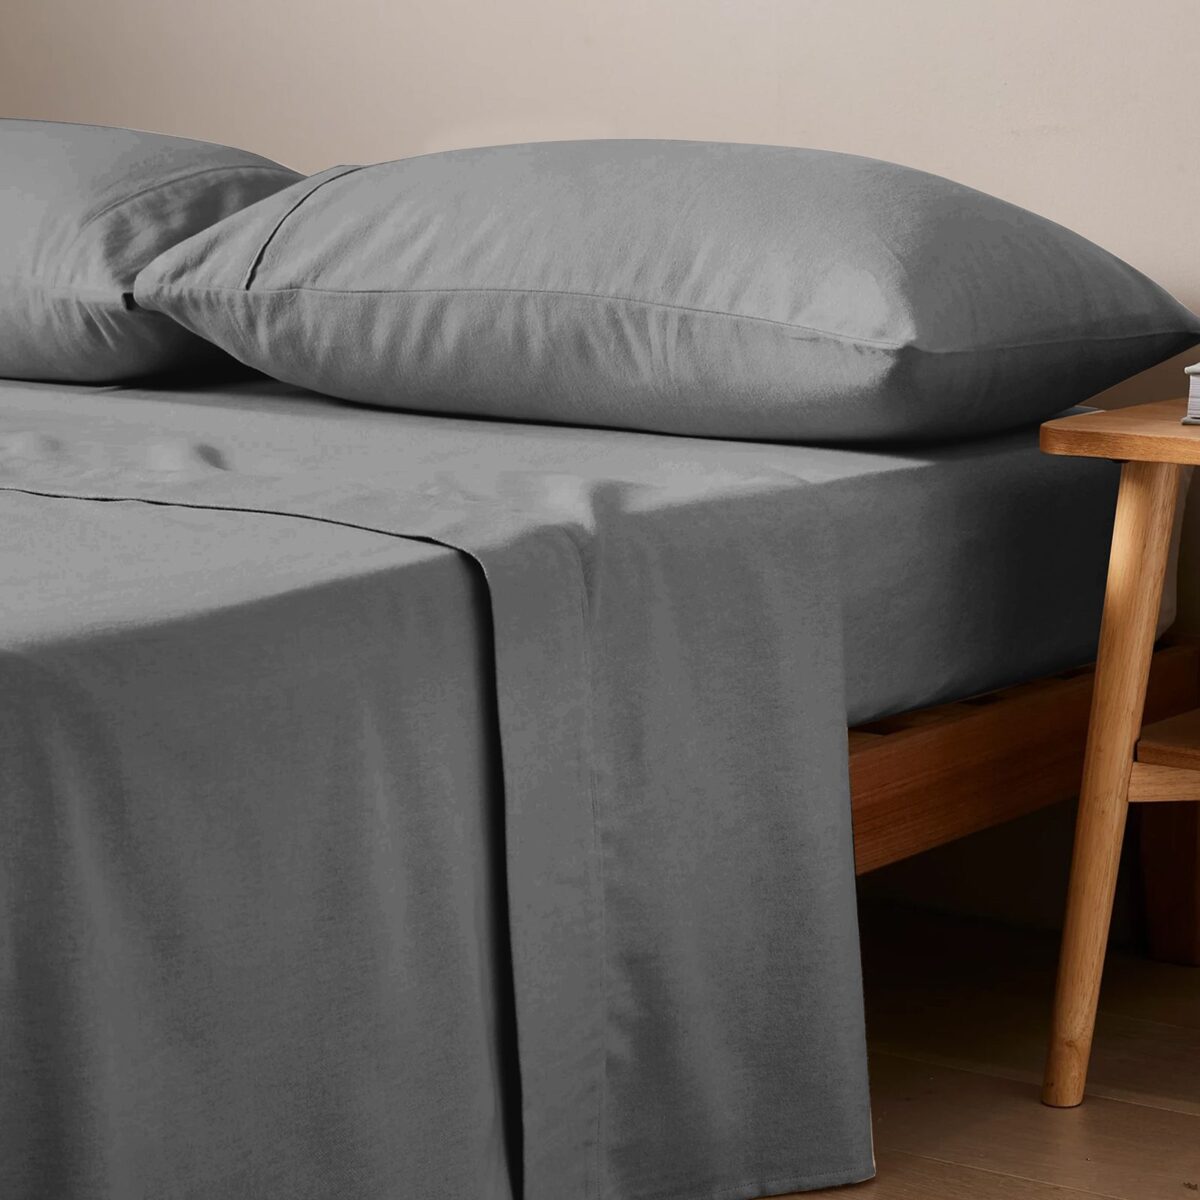 Queen bed sheet